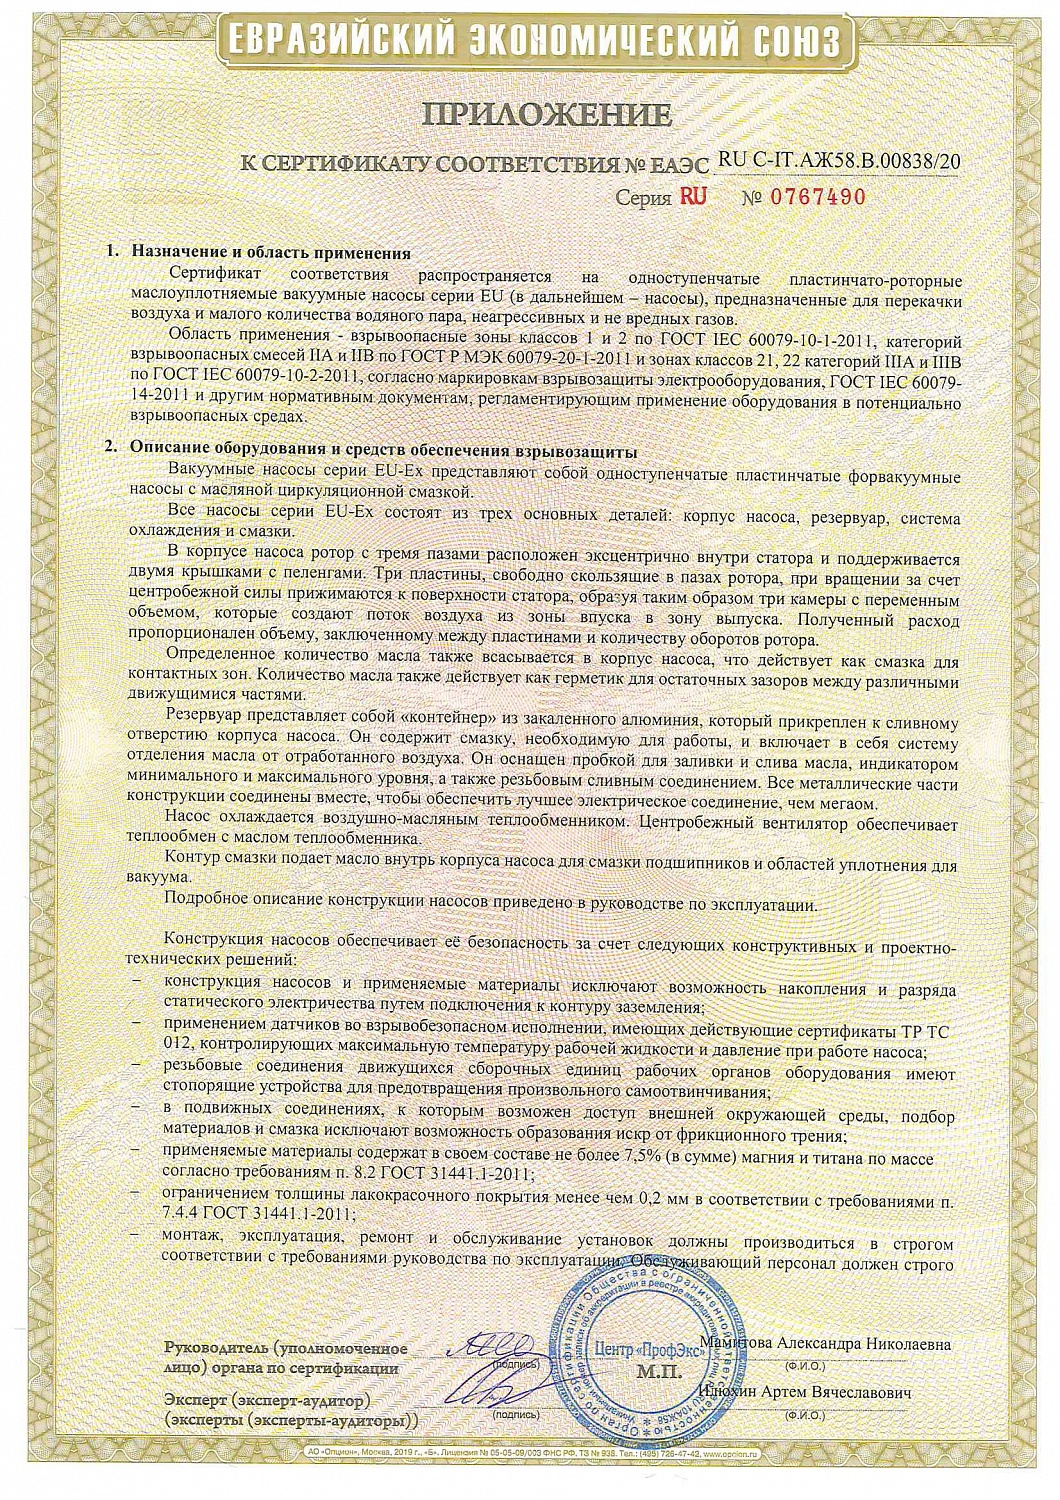 Компания ООО "ТАКО Лайн" получила сертификат соответствия  ТР ТС 012/2011 "О безопасности оборудования для работы во взрывоопасных средах